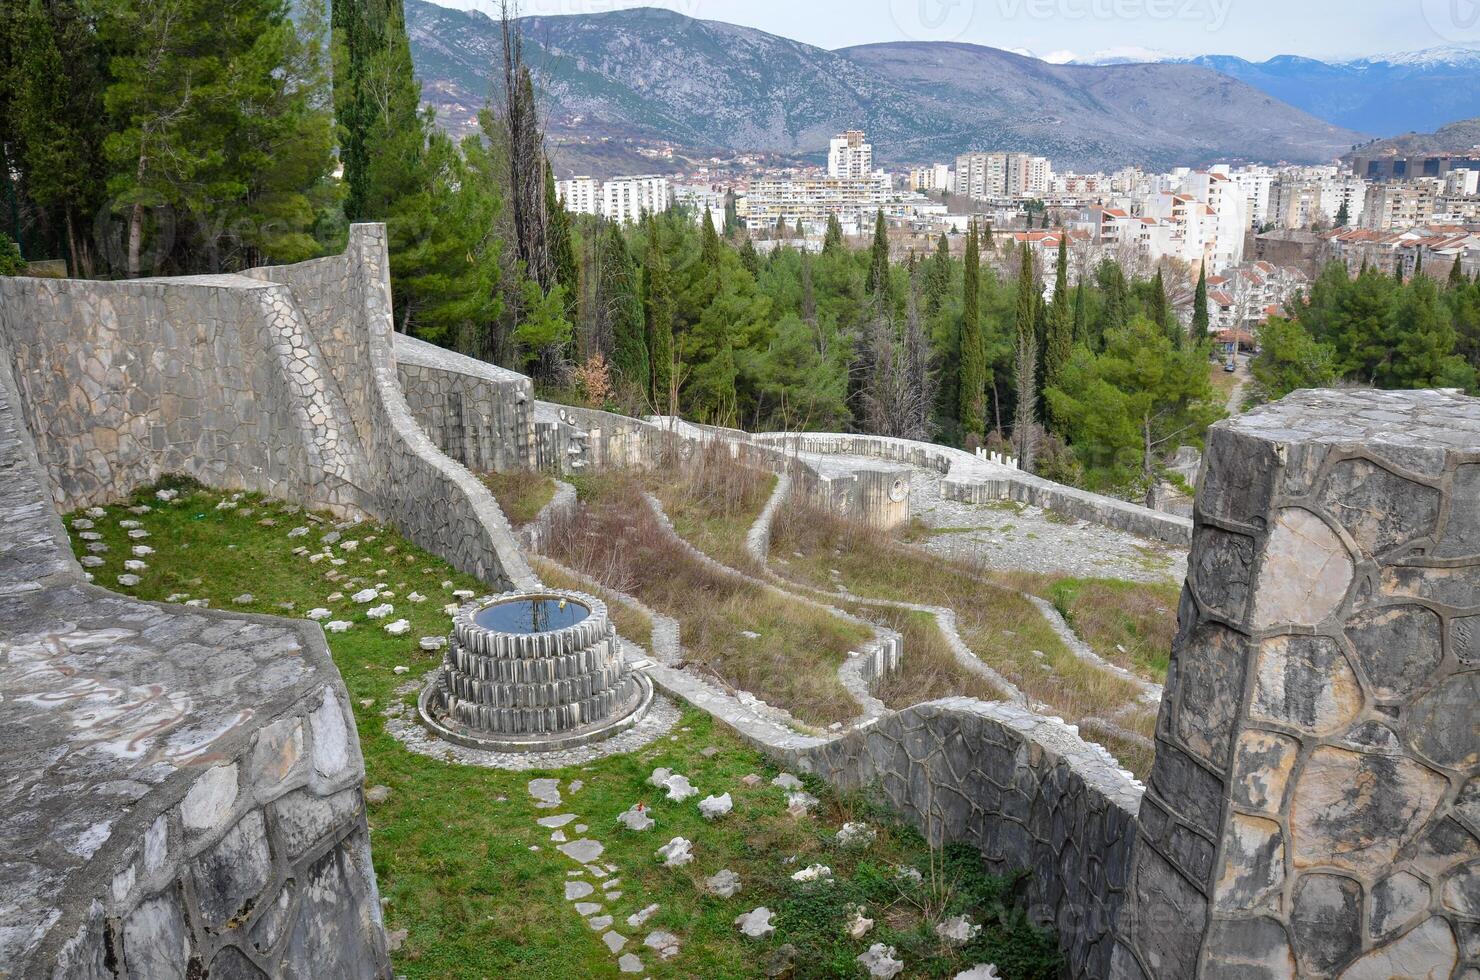 partidista monumento cementerio en mostrar, bosnia y herzegovina el proyecto estaba terminado en 1965, honrando yugoslavo partisanos quien fueron delicado durante mundo guerra ii en mostrar. foto